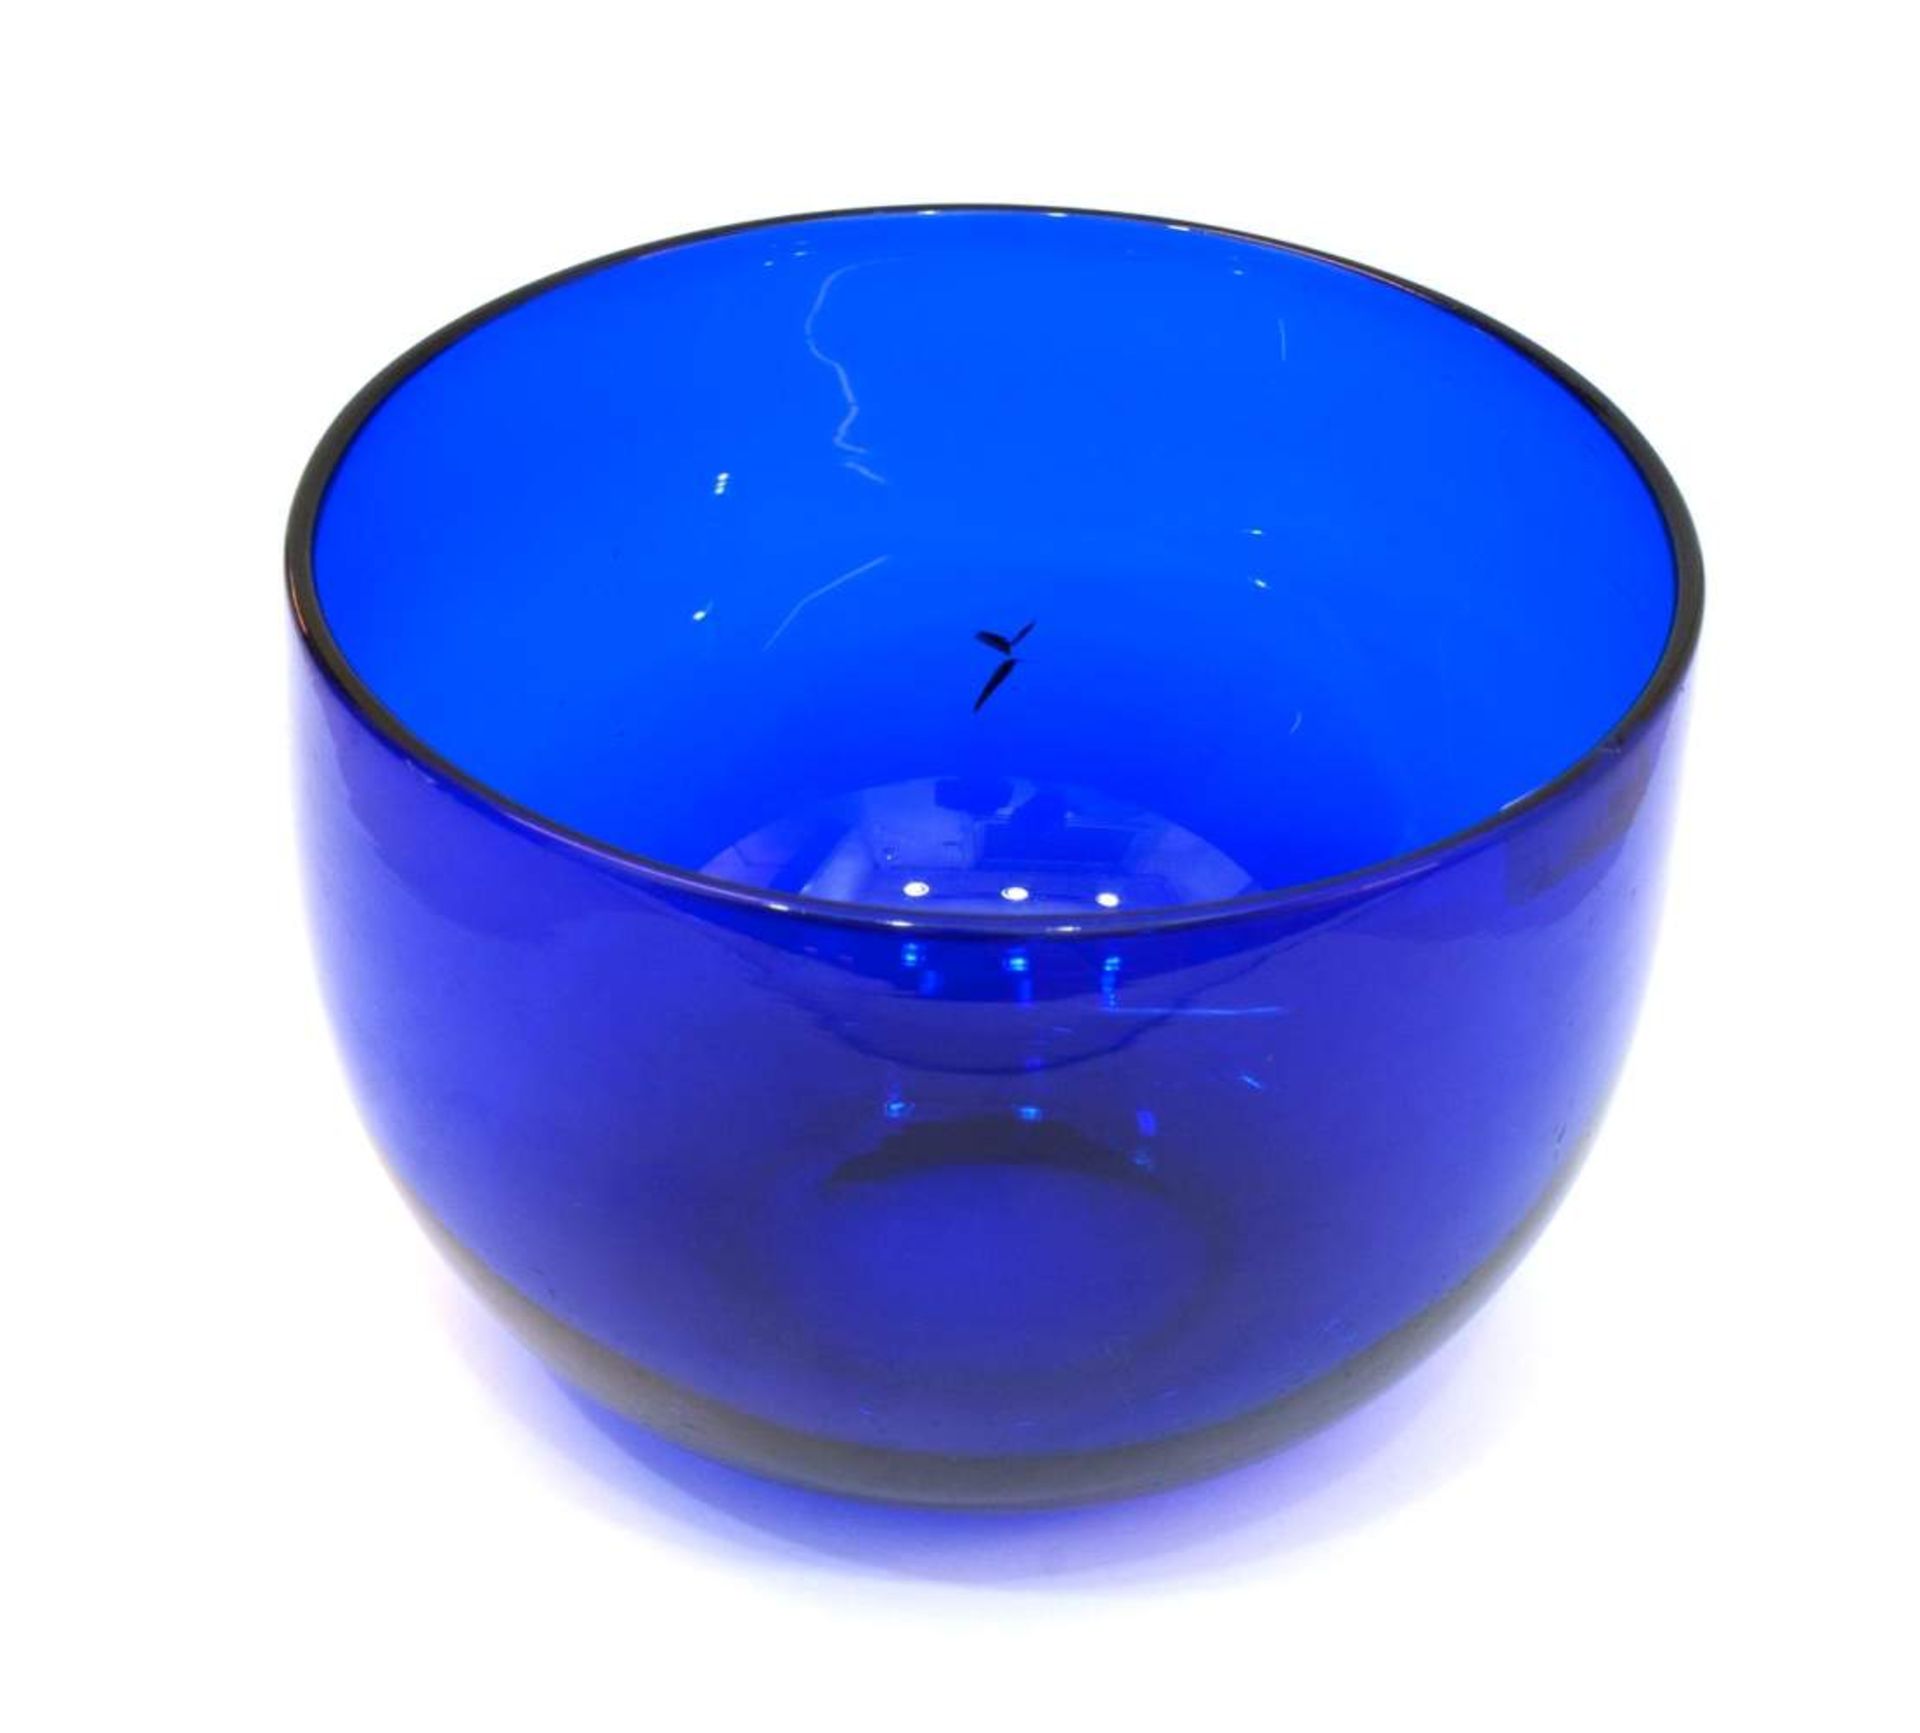 Konfektschale 19. Jh., Blauglas, ausgemugelter Abriß, H. 8,5 cm, D. 12 cm, mit Glasfehler